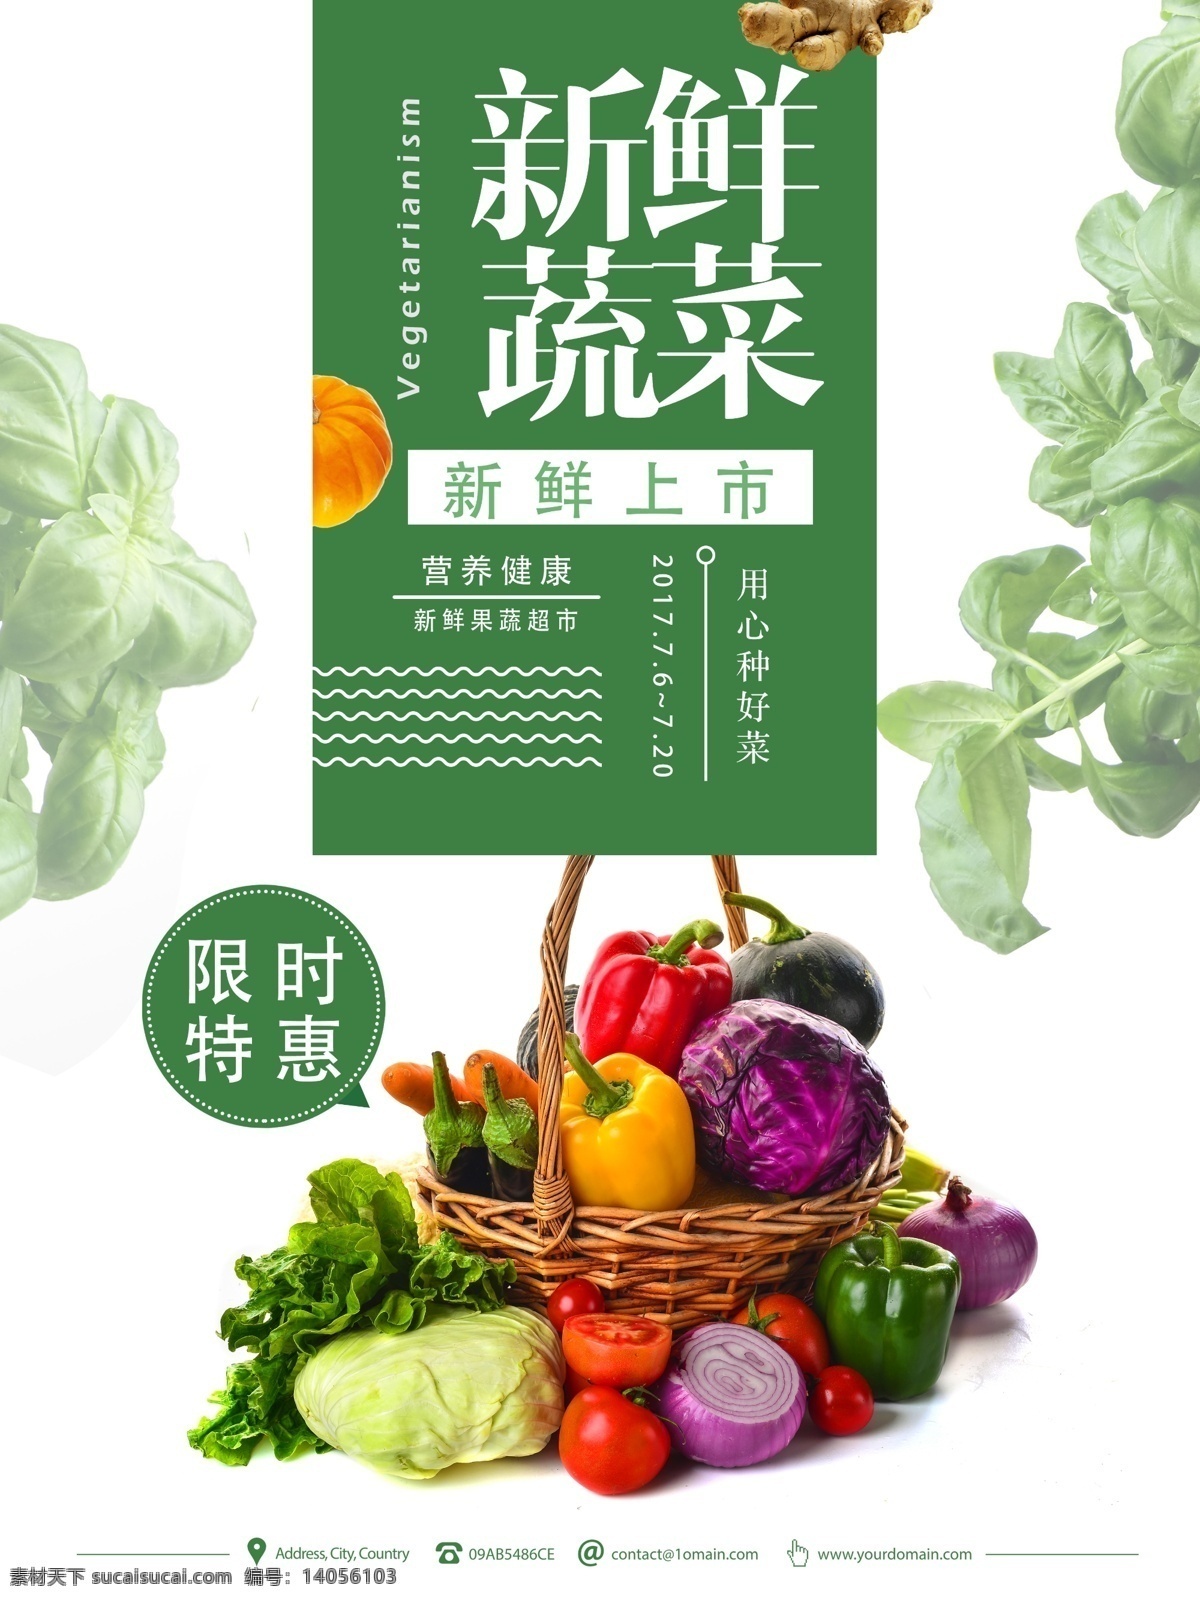 简约 新鲜 蔬菜水果 超市 促销 海报 限时特惠 果蔬 蔬菜 水果 生鲜 绿色健康 环保 有机蔬菜 无公害